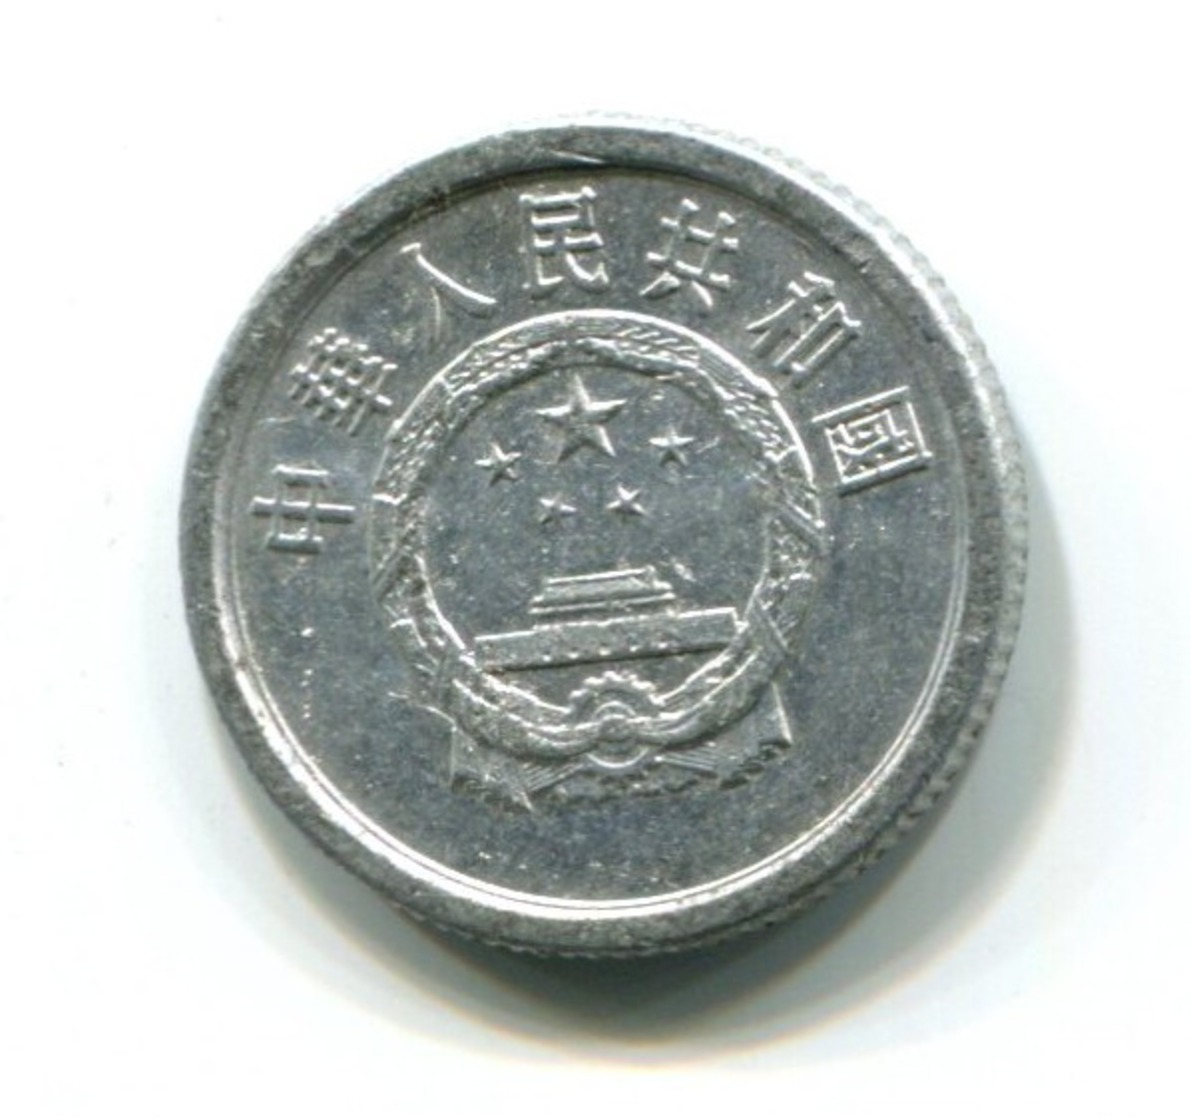 1980 China Aluminum 1 Fen Coin - China